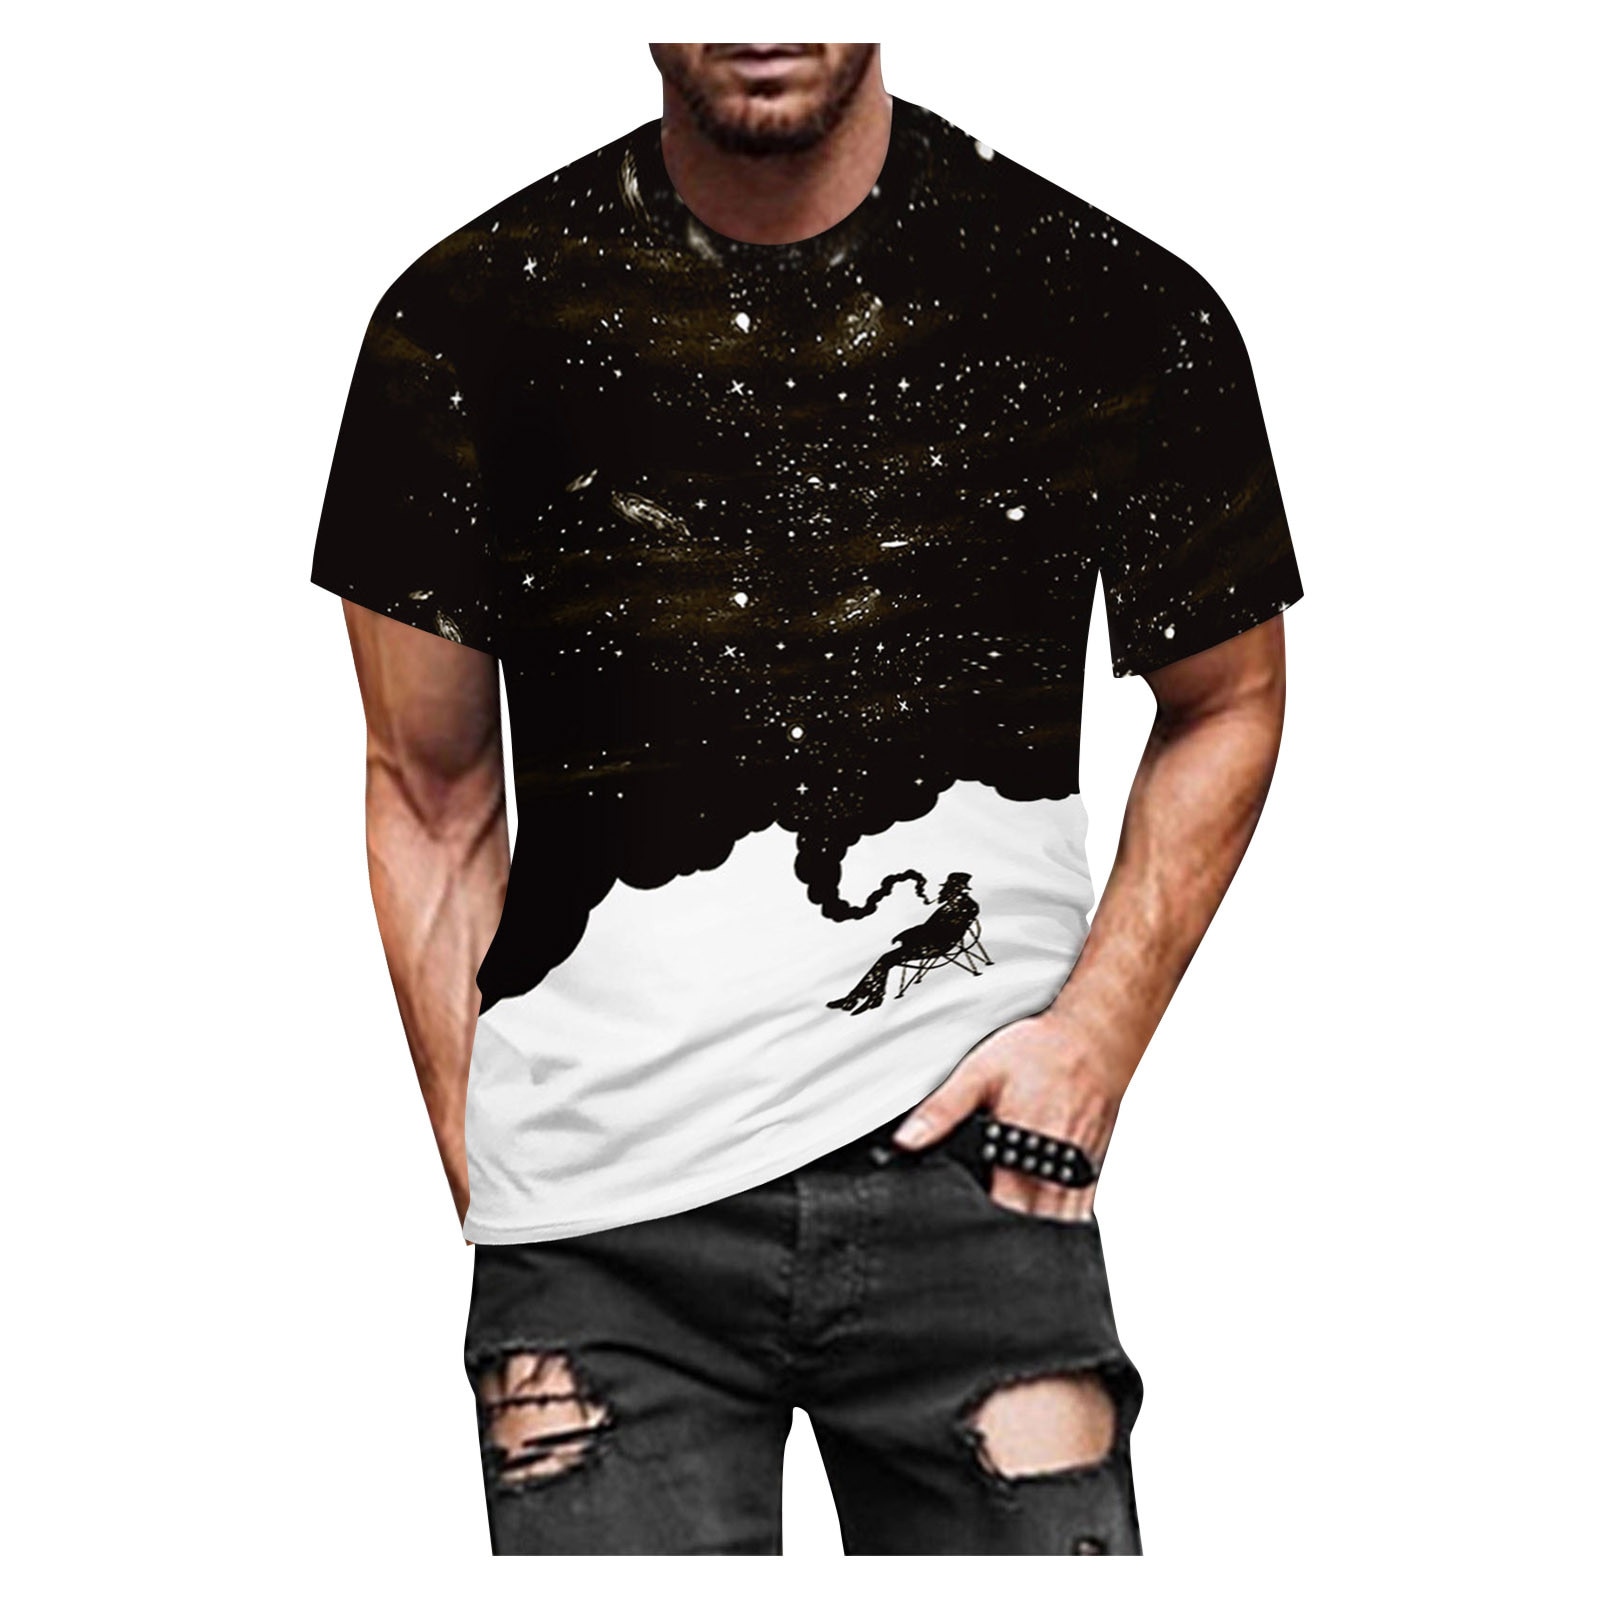 Summe T-shirt Voor Man Casual Slim 3D Gedrukte Korte Mouwen T-shirt Mannen Vrouwen Top Blouse Cool Tee Tops mannelijke Streetwear